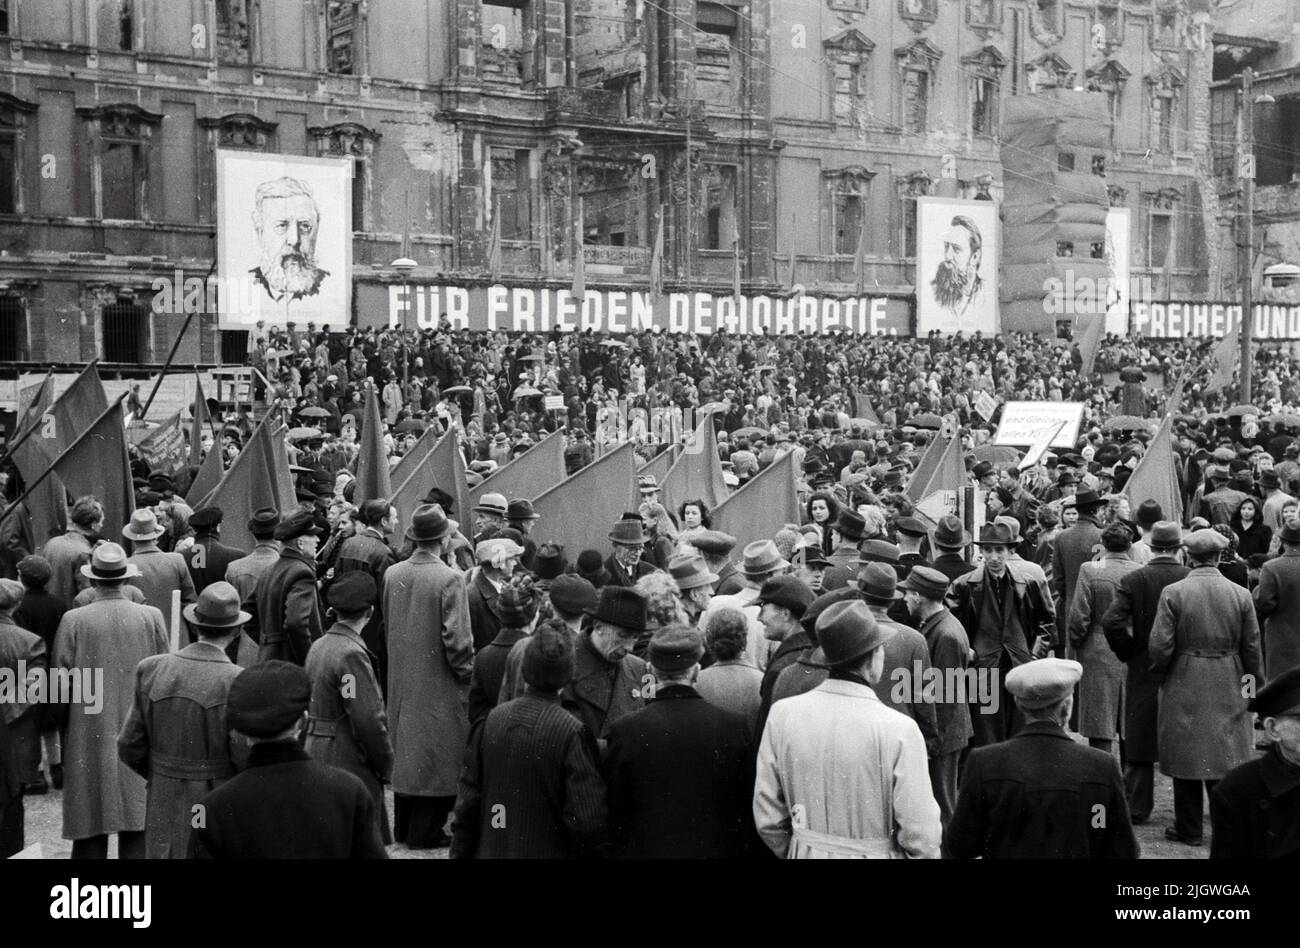 Maifeier Berlin 1947 - Menschenmassen bei der Feier zum 1. Mai vor der Alten Bibliothek am Bebelplatz a Berlino, Germania 1947 - trasparente: für Frieden. Demographie und Freiheit Foto Stock